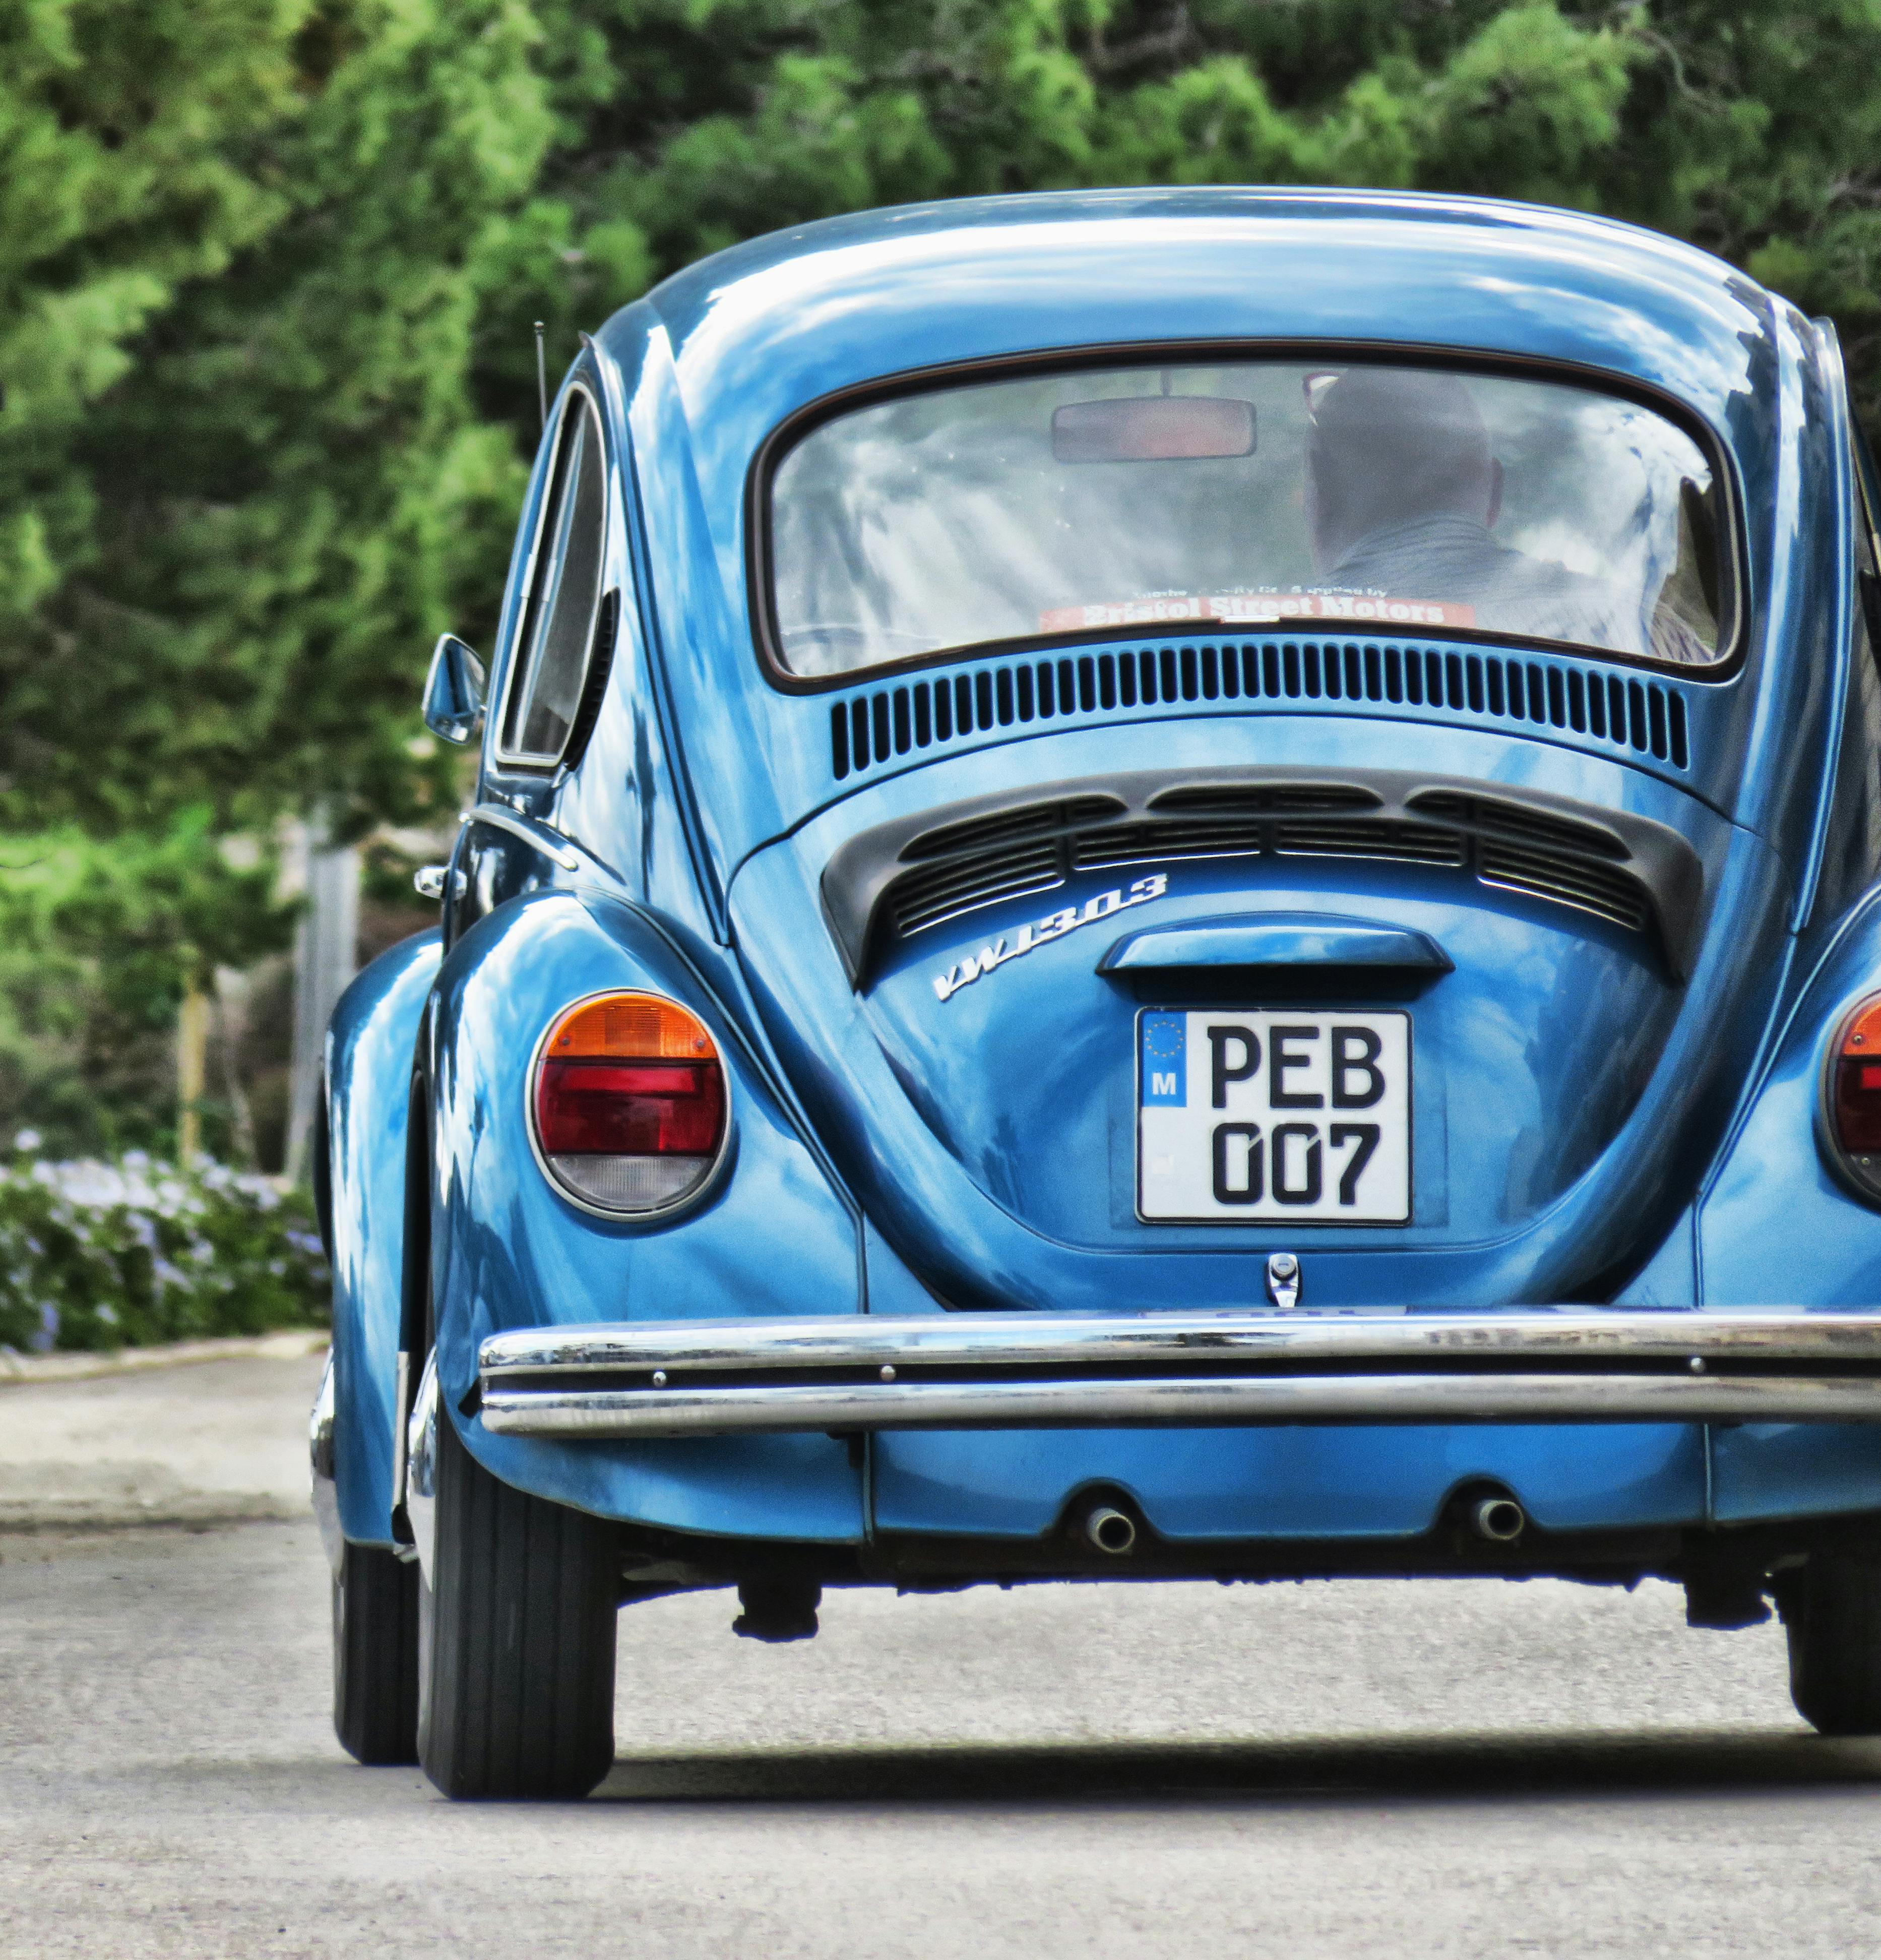  Volkswagen Beetle classic wallpaper   Wallery